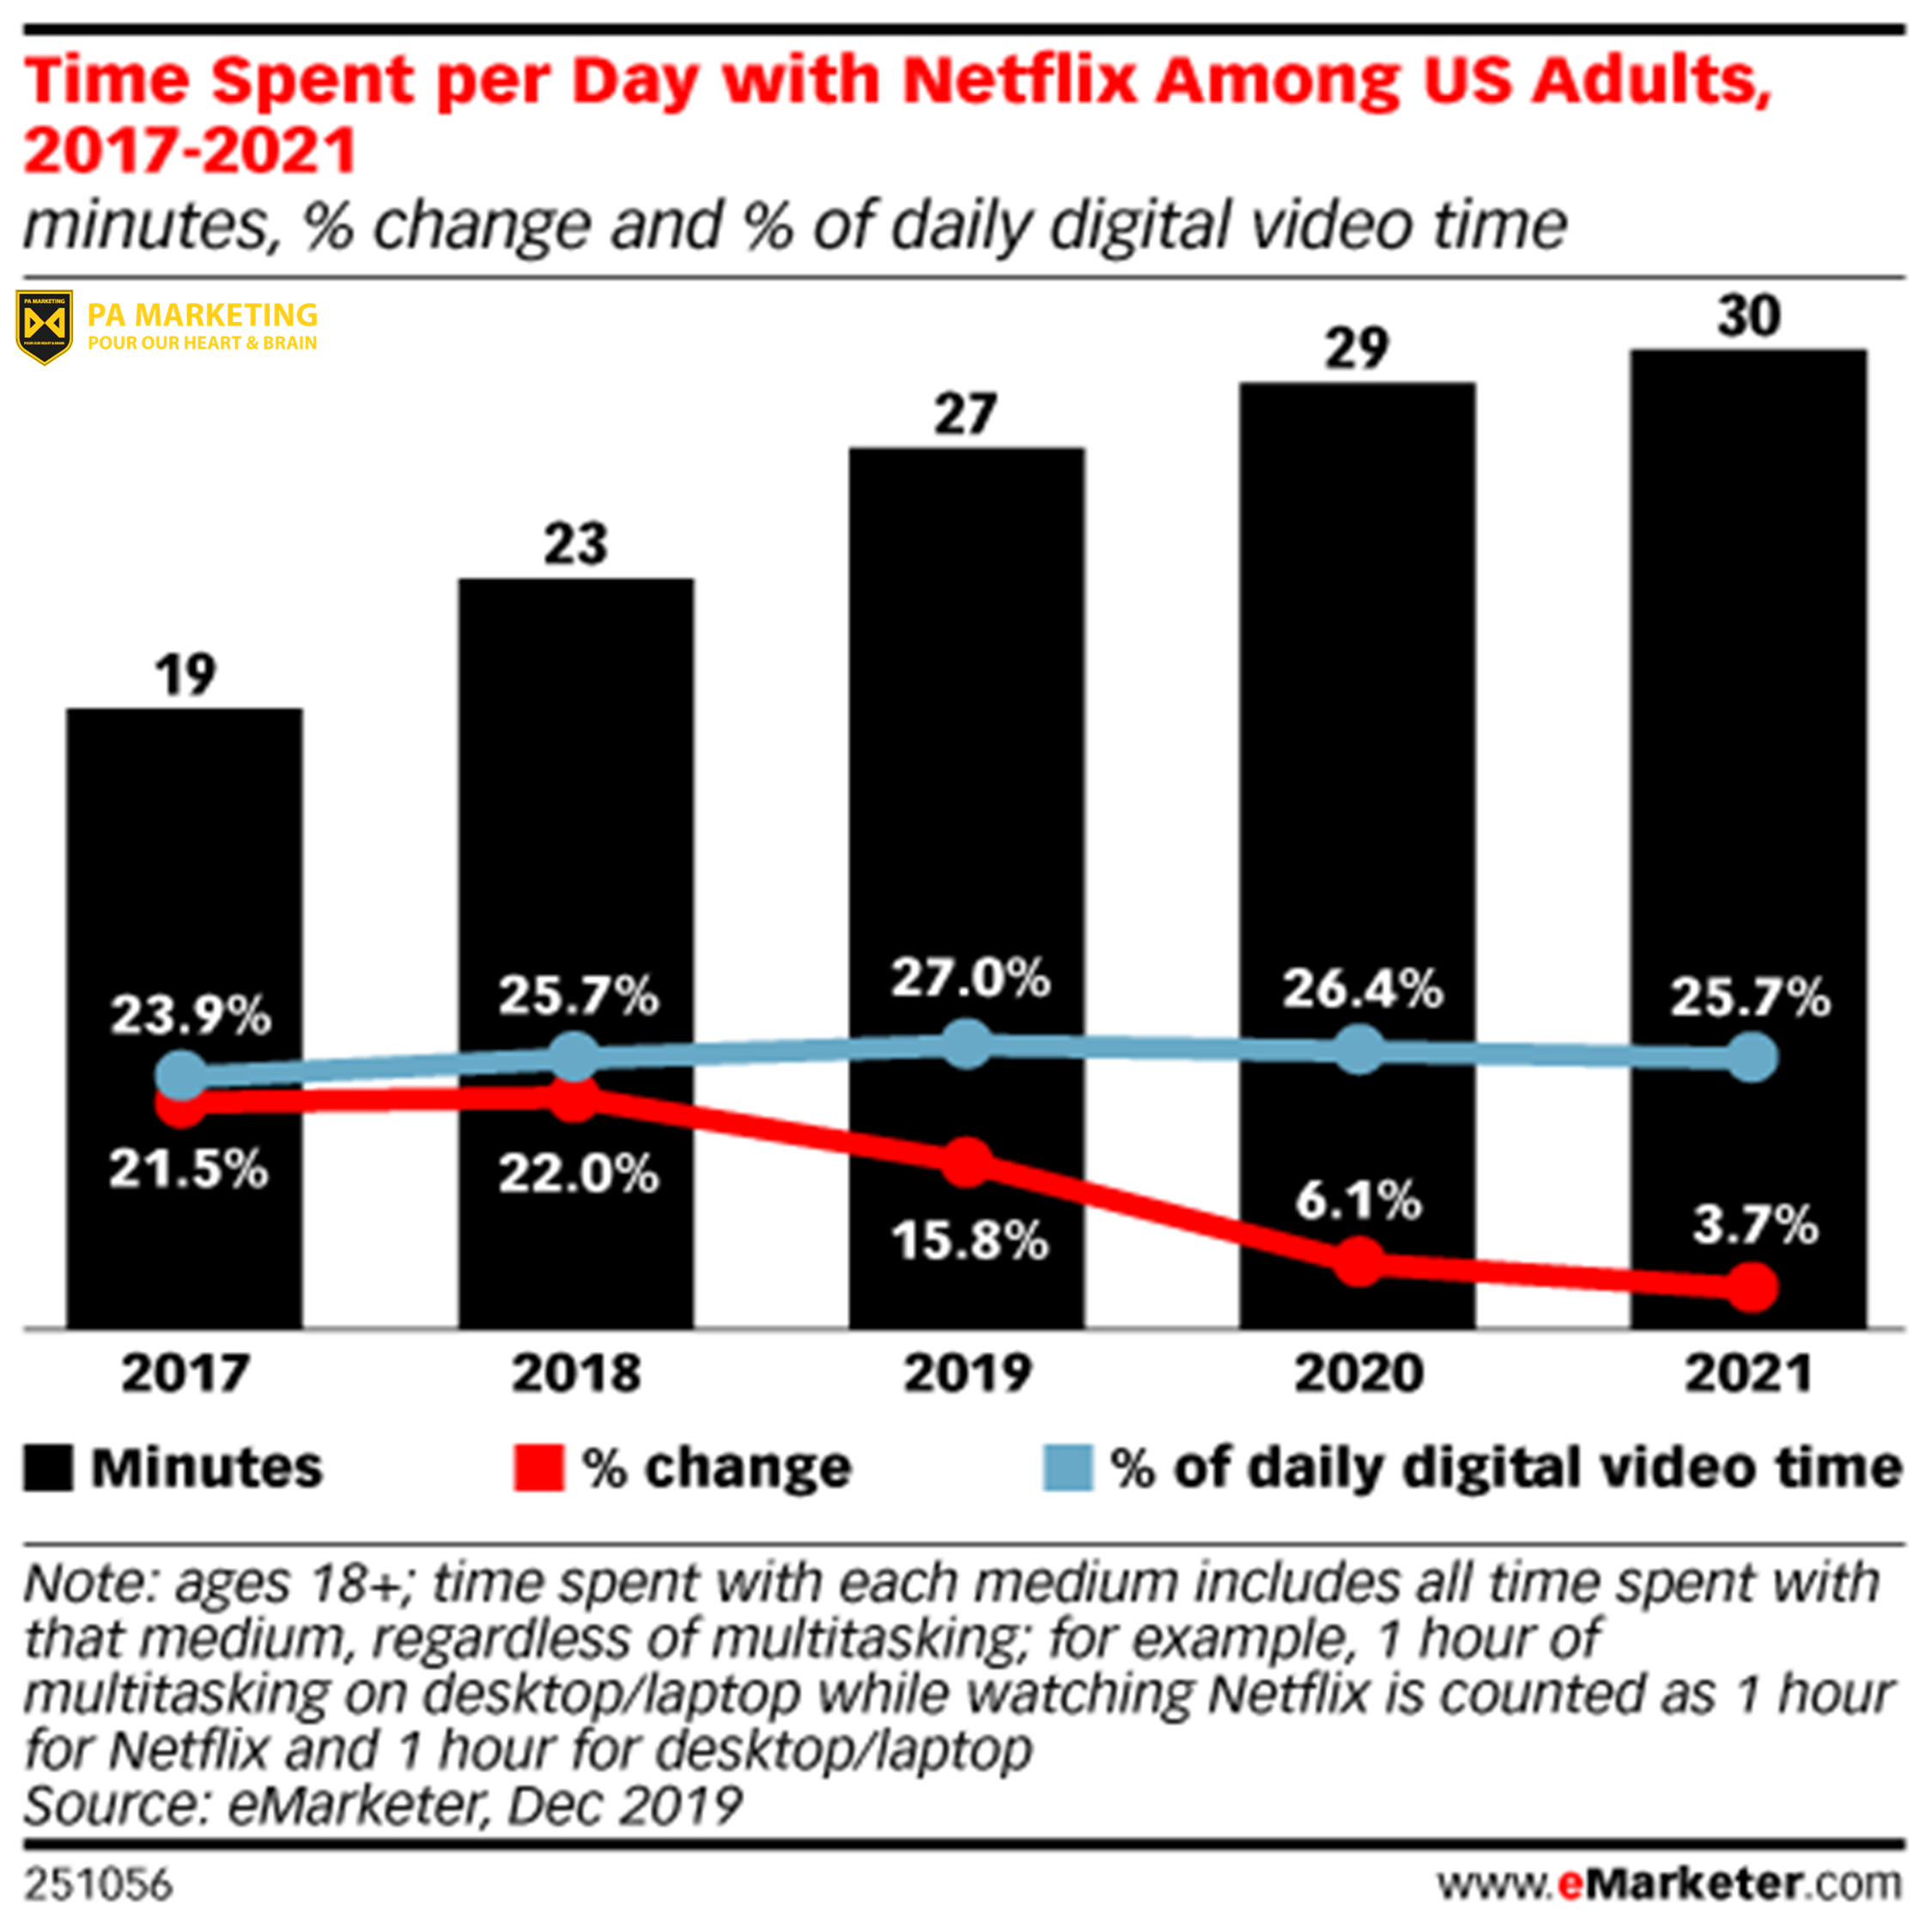 Thời gian mà mọi người dành cho Netflix mỗi ngày đang tăng lên — nhưng thị phần của Netflix hàng ngày tại Hoa Kỳ đạt đỉnh vào năm 2019 (27,0%) và sẽ giảm xuống 25,7% vào năm 2021.